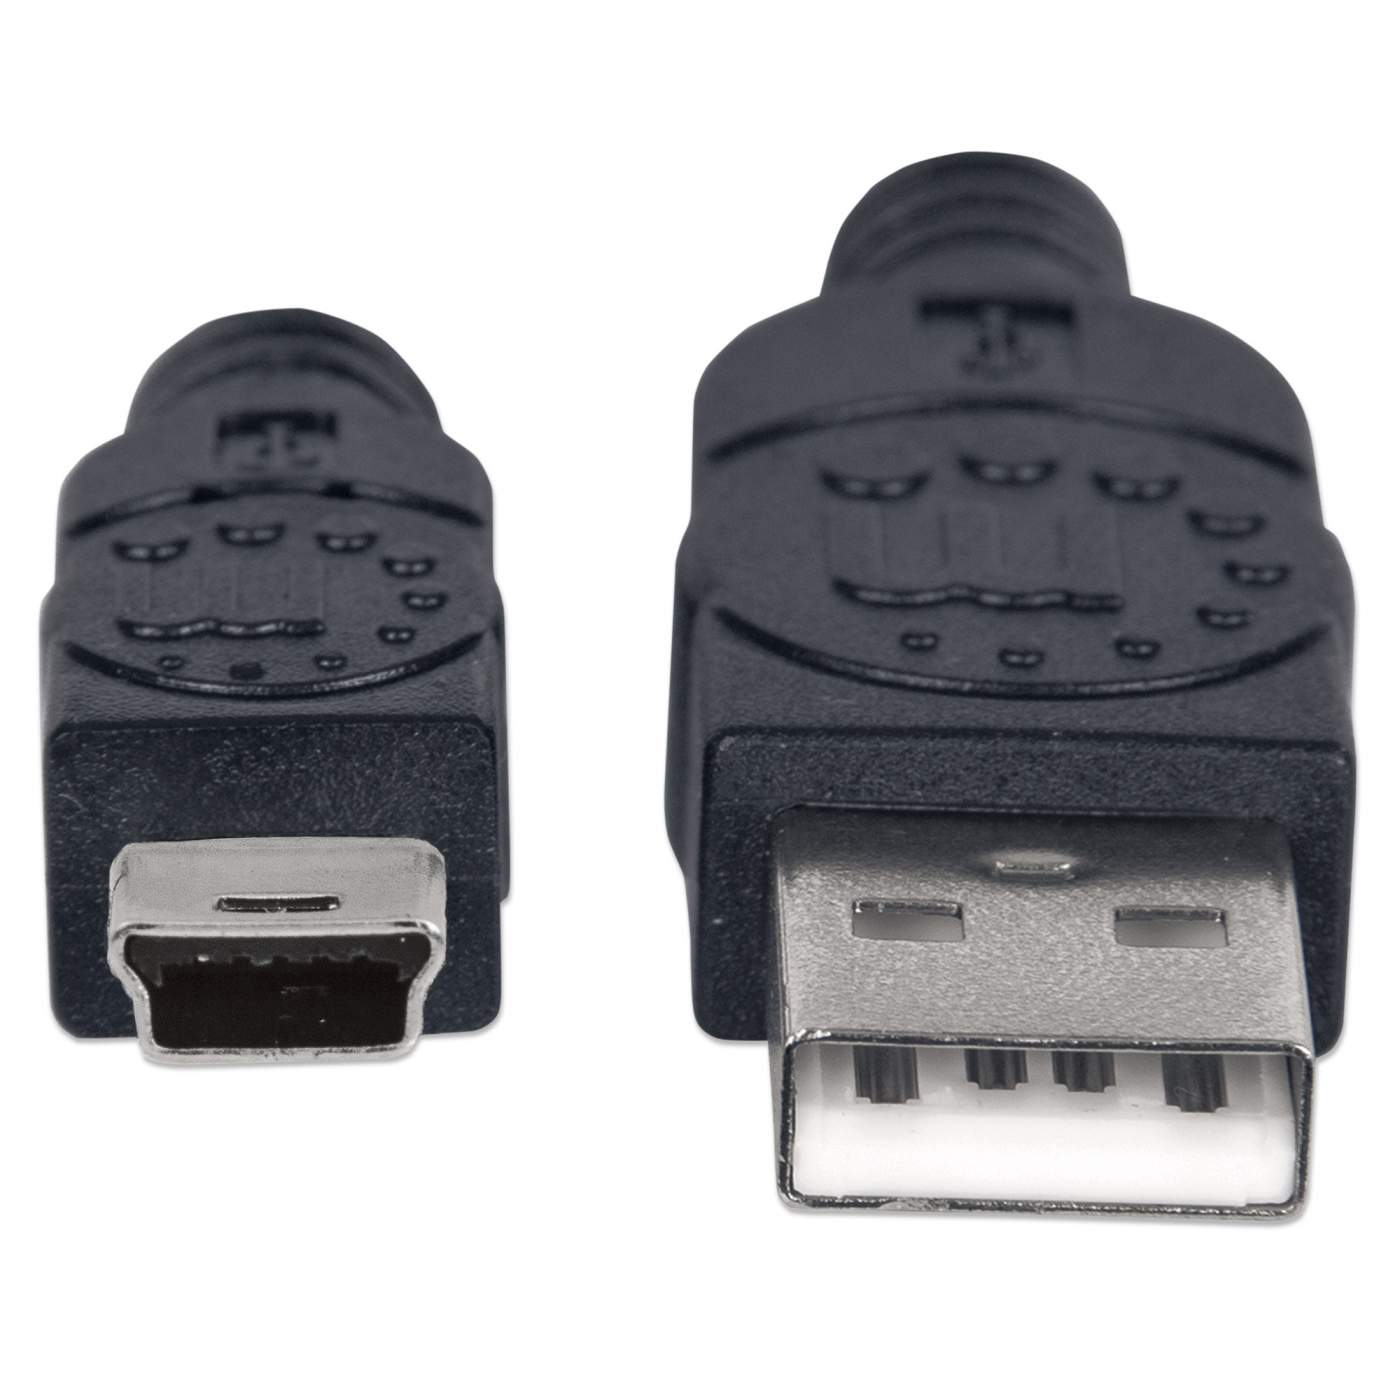 Cable USB mini-B Sparkfun CAB-11301